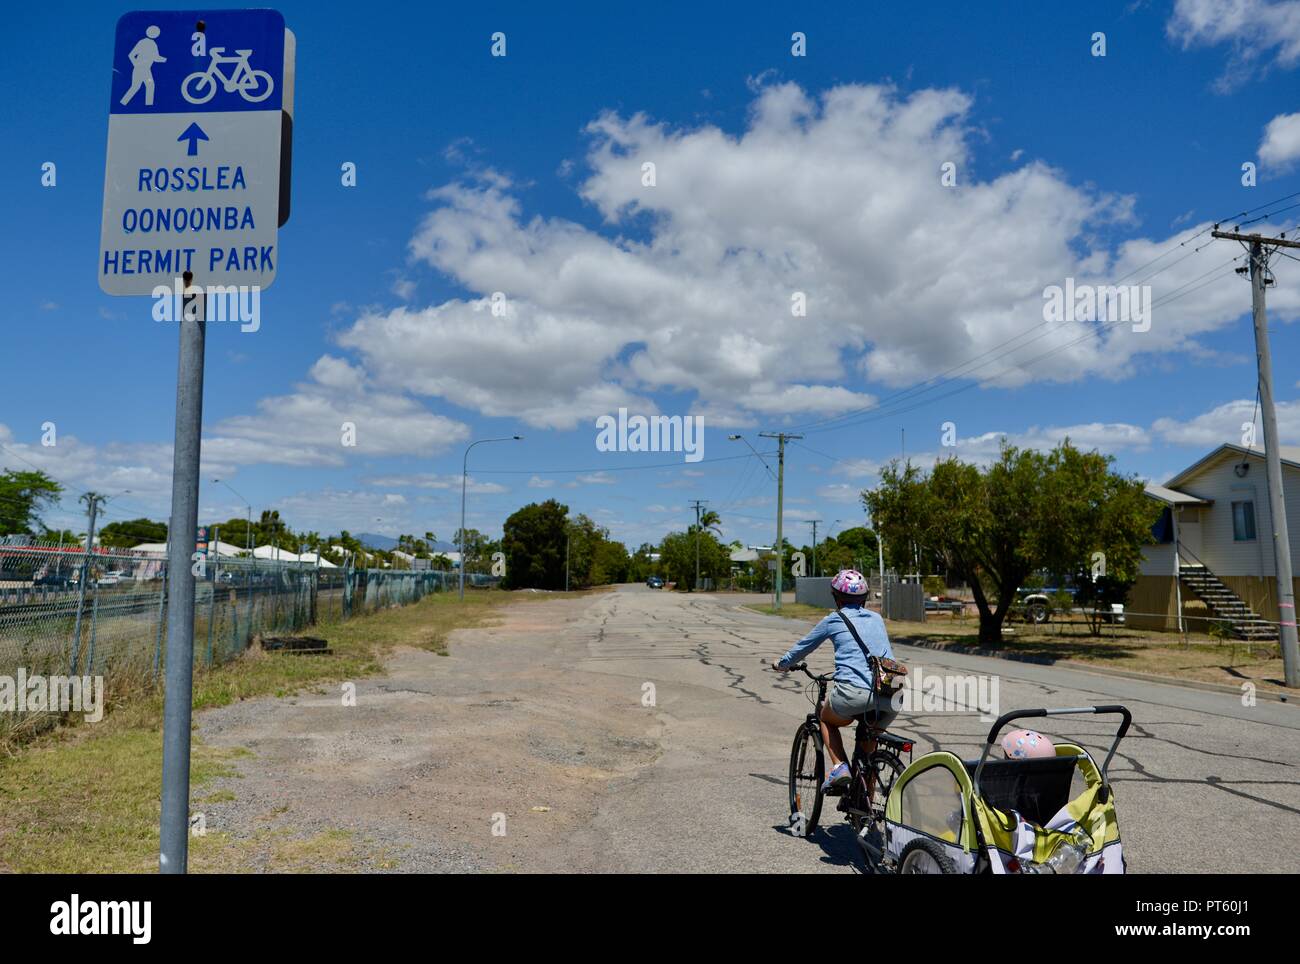 La donna in sella ad una bicicletta con un rimorchio per biciclette per bambini, Townsville, QLD, Australia Foto Stock